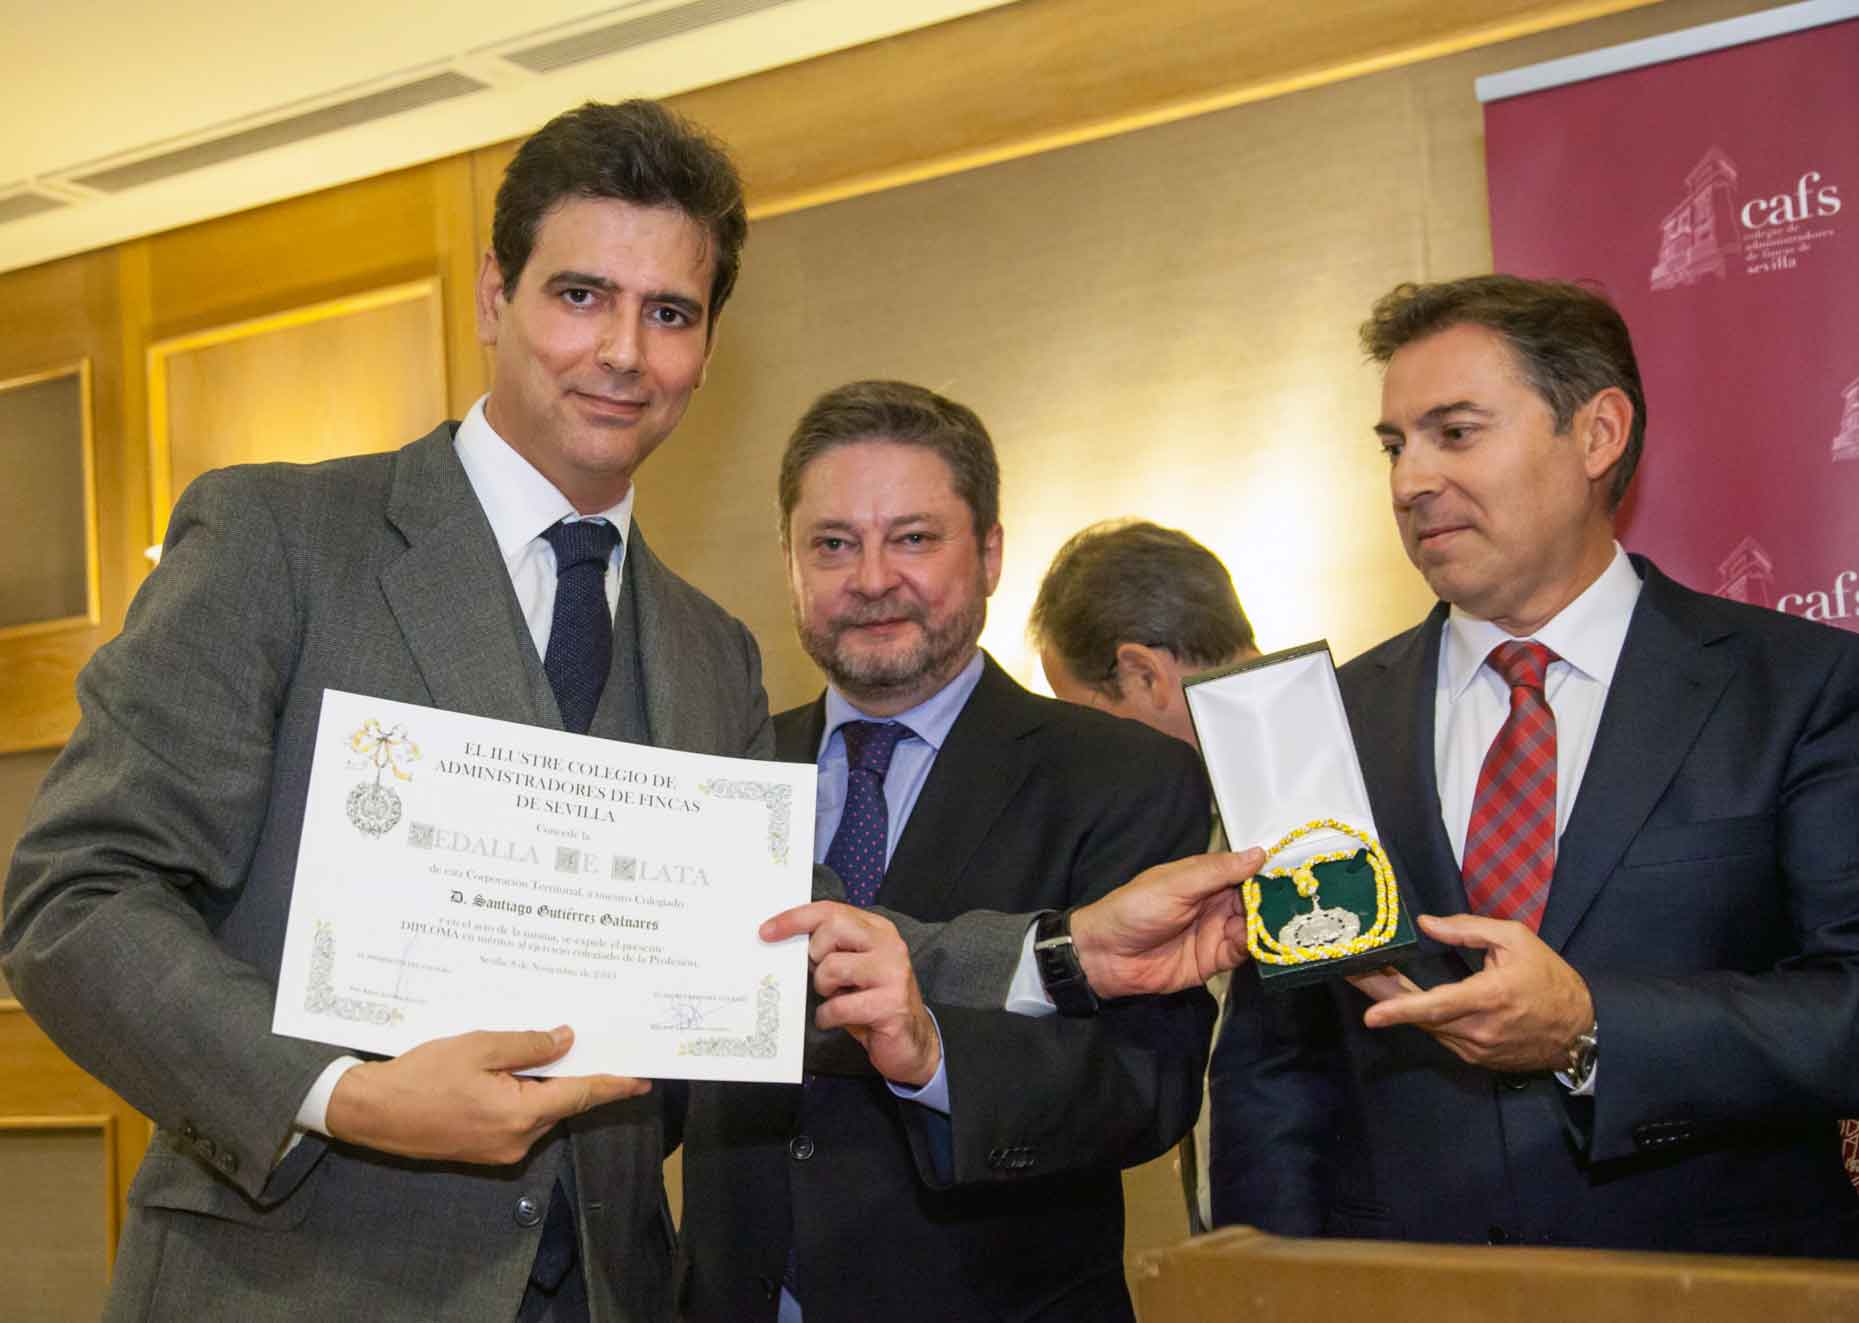 santiago-gutierrez-galnares-medalla-honor